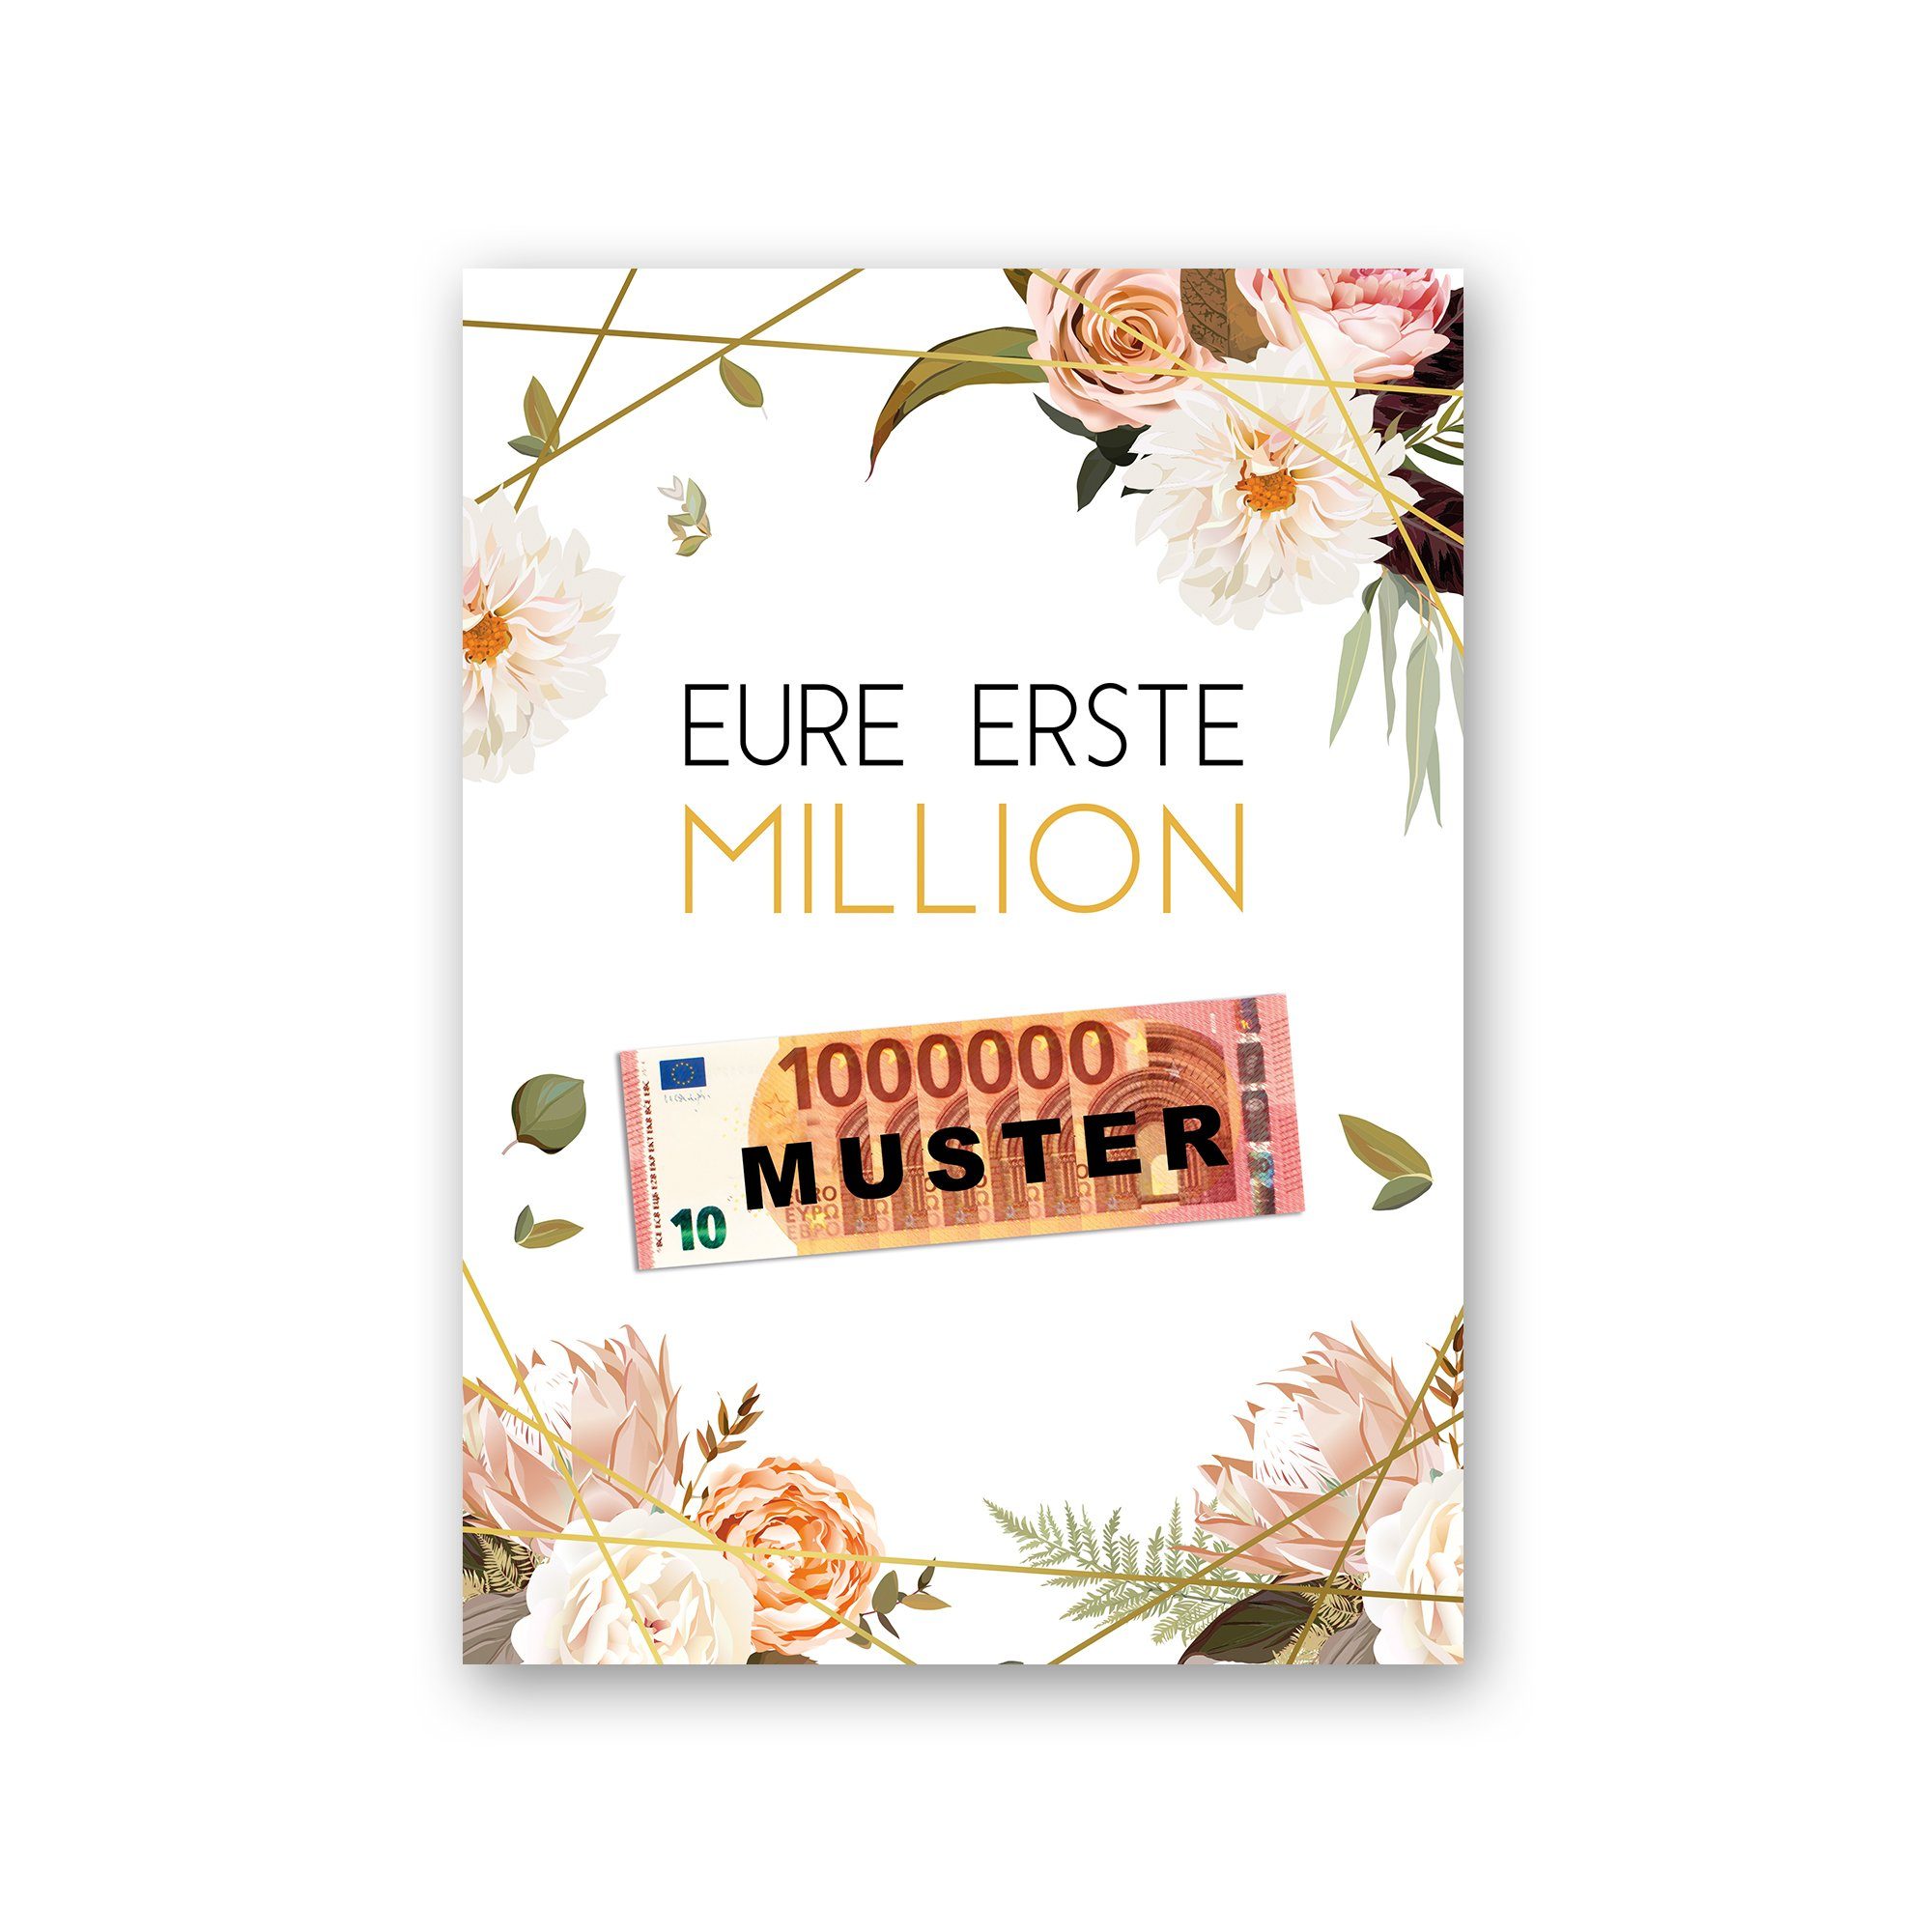 Kreative Feder Poster Premium Poster „Eure erste Million“ - Kunstdruck mit Rosen-Design, Blumen, optional mit Rahmen; wahlweise DIN A4 oder DIN A3 natur Rahmen